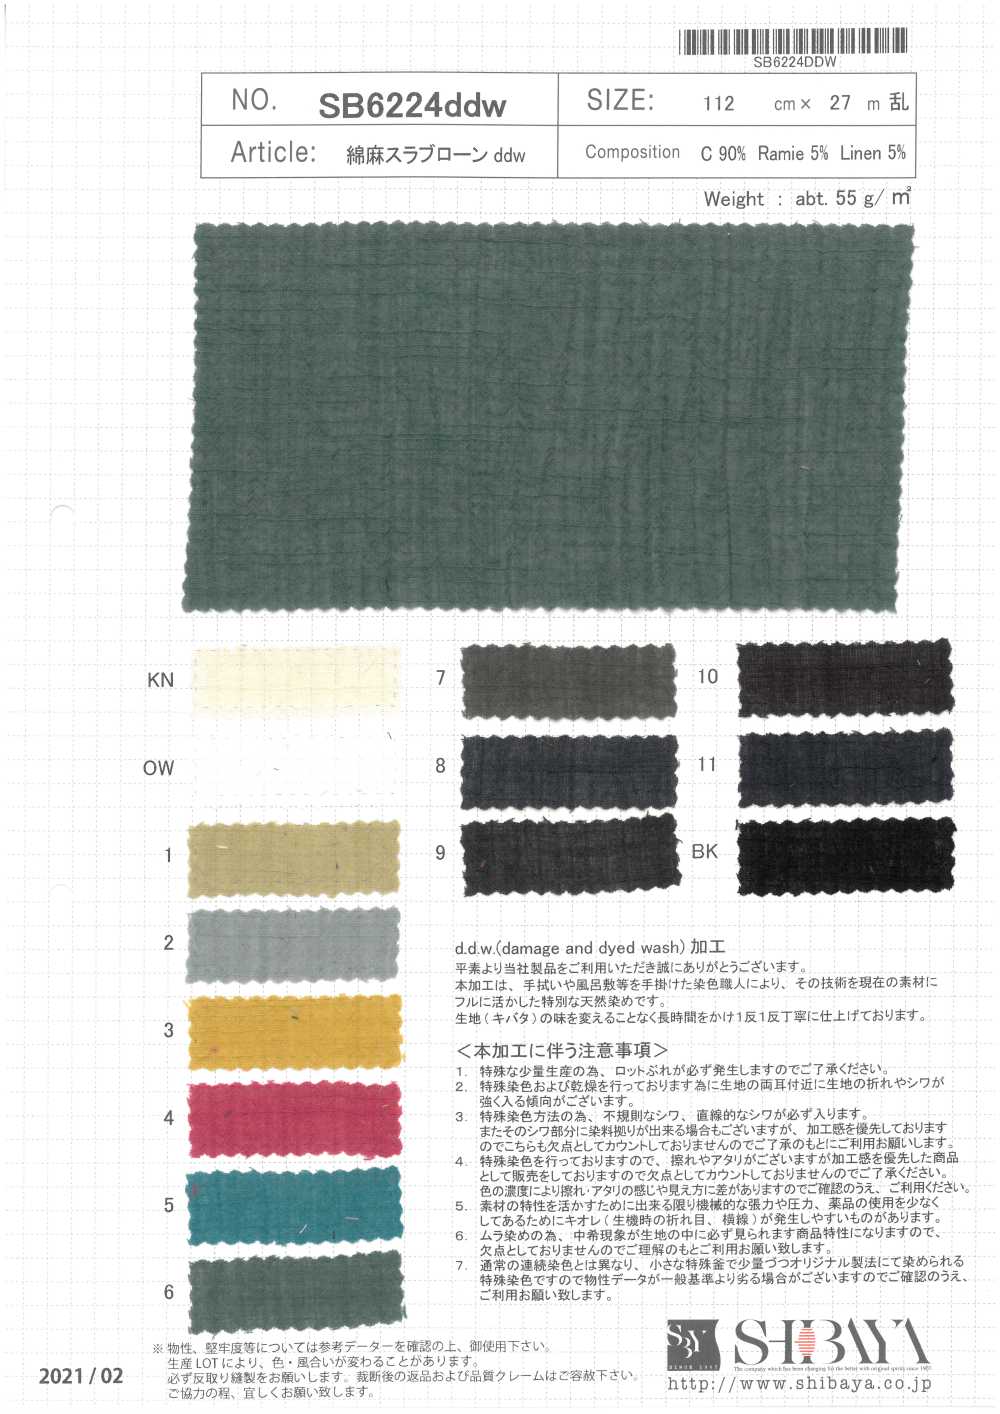 SB6224ddw Linen Slab Lawn DDW[Textile / Fabric] SHIBAYA